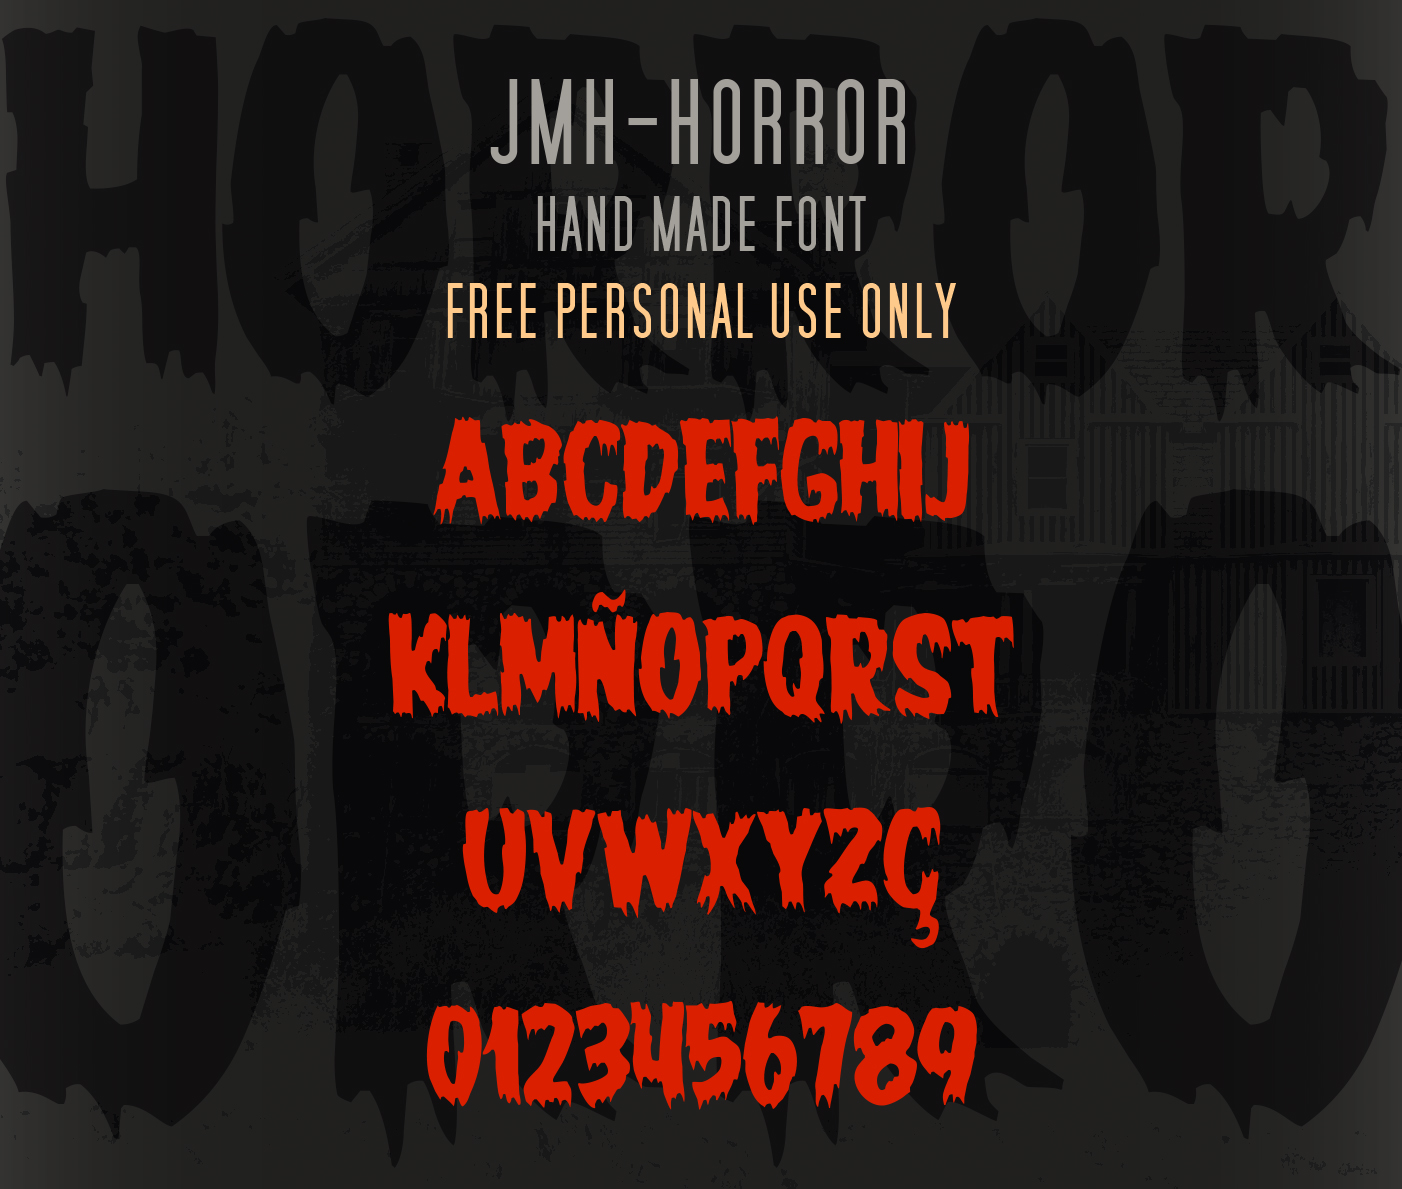 JMHHORROR font